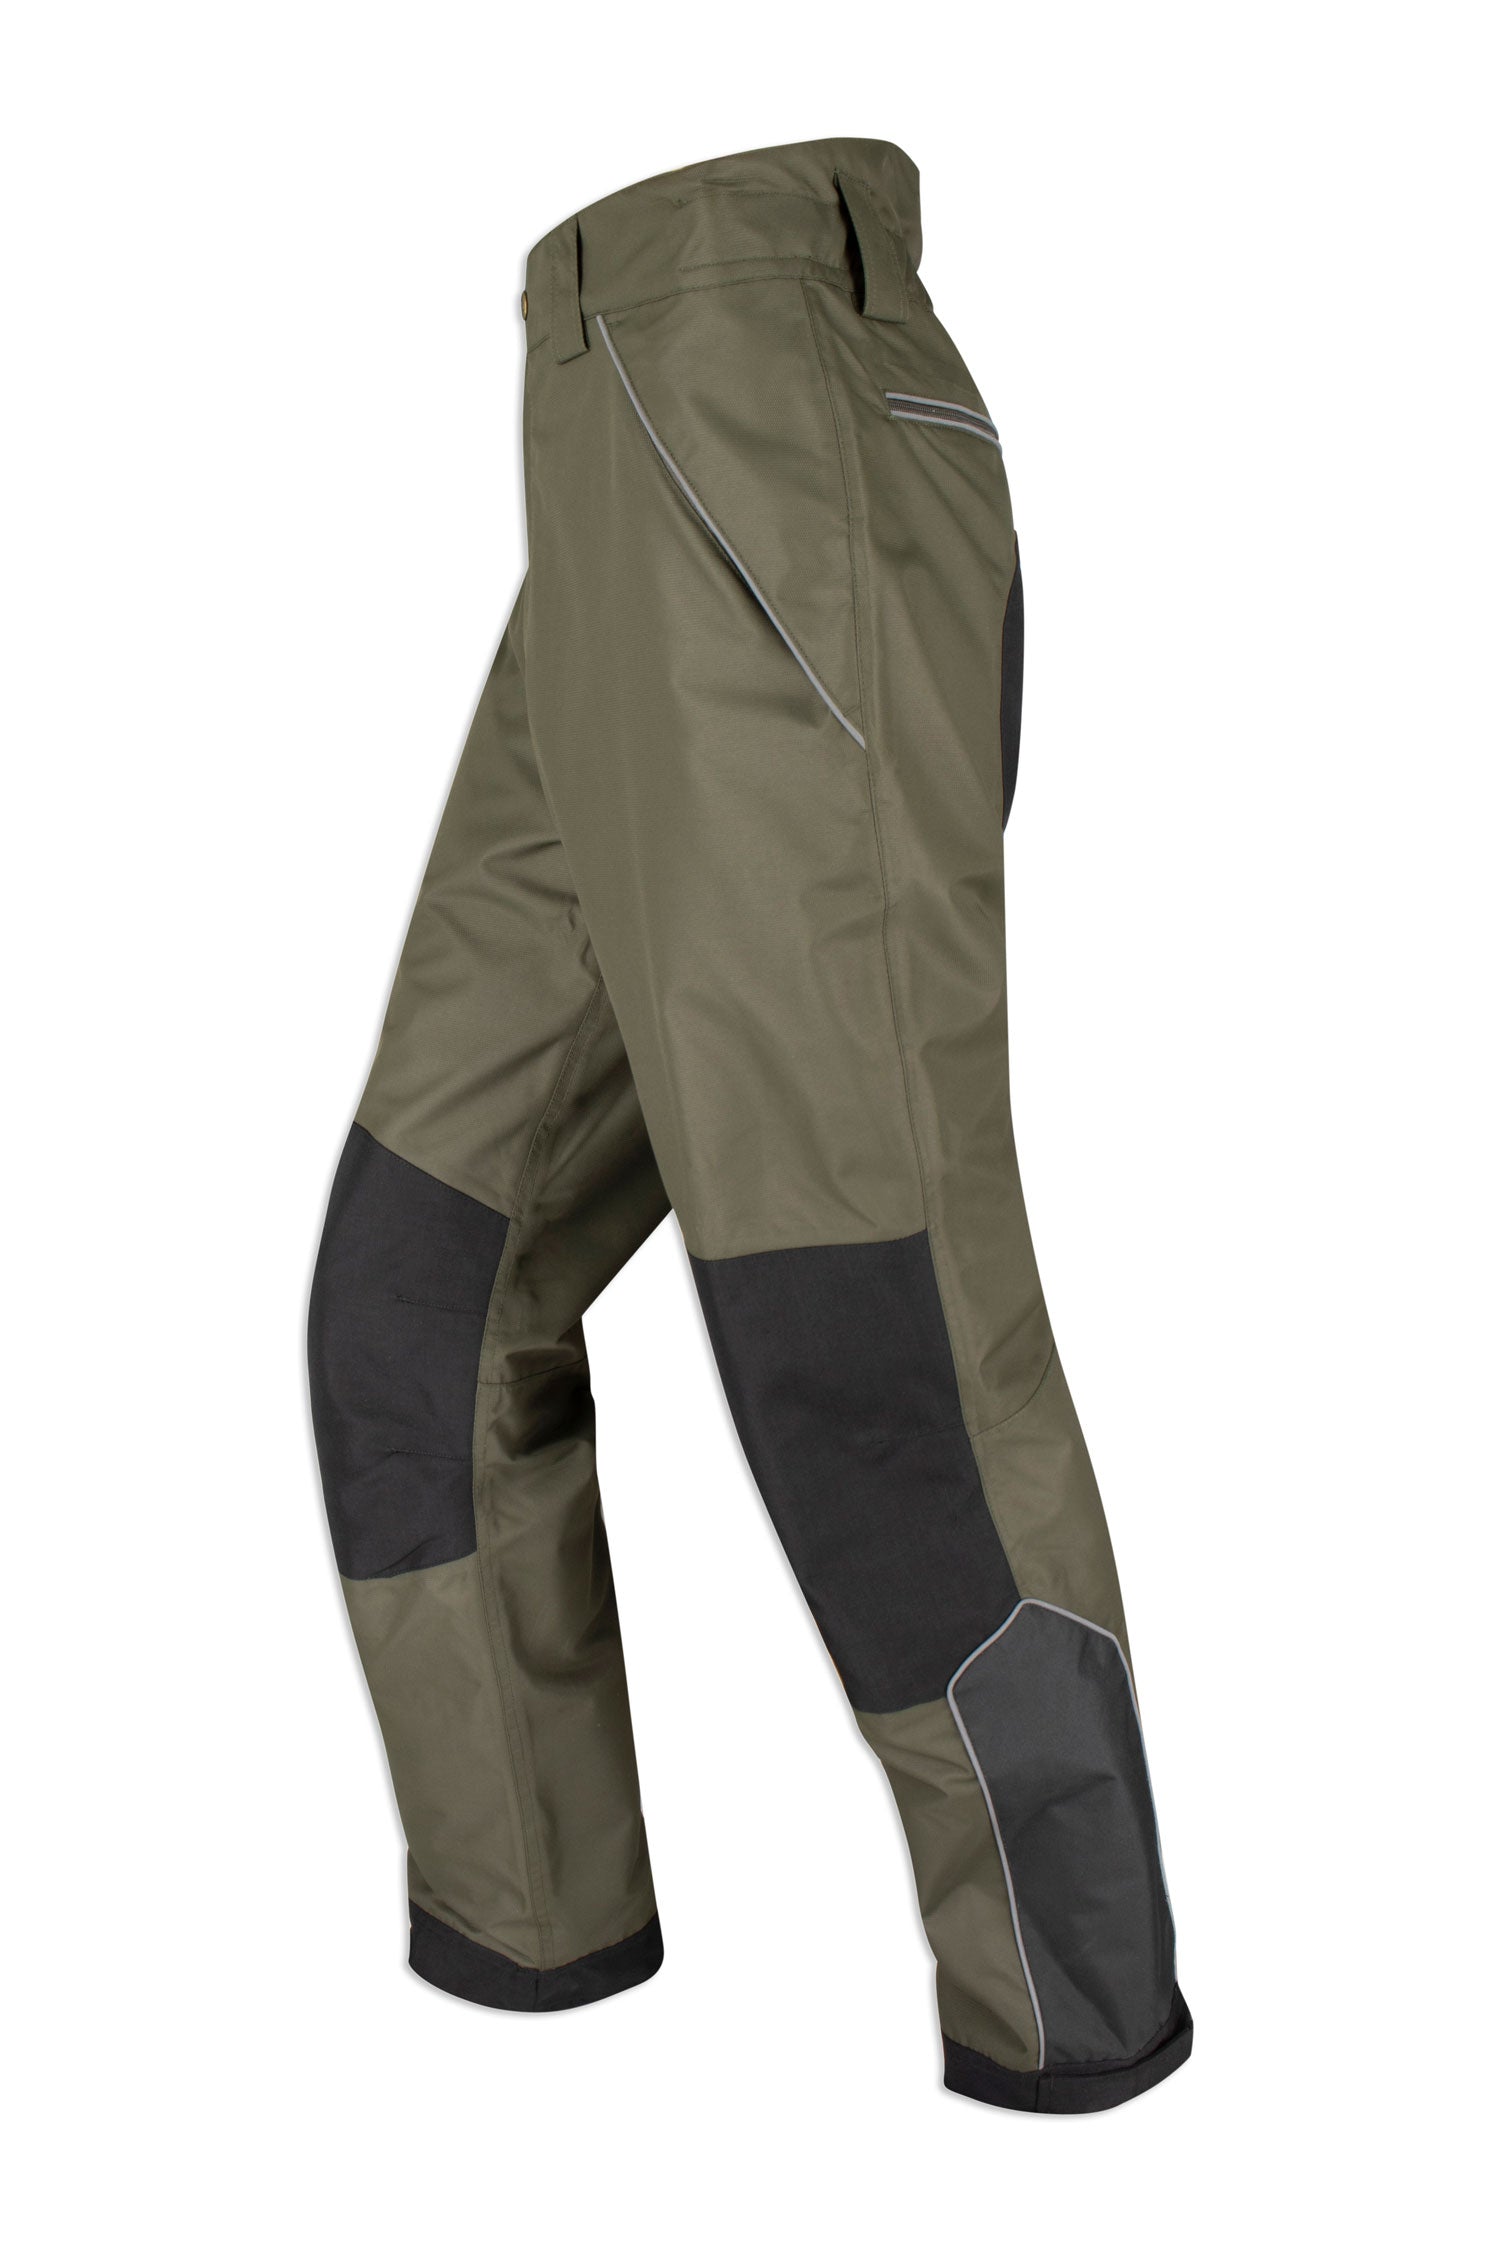 https://hollandscountryclothing.co.uk/cdn/shop/products/Hoggs-Field-Tech-Waterproof-Trousers.jpg?v=1697040940&width=1500